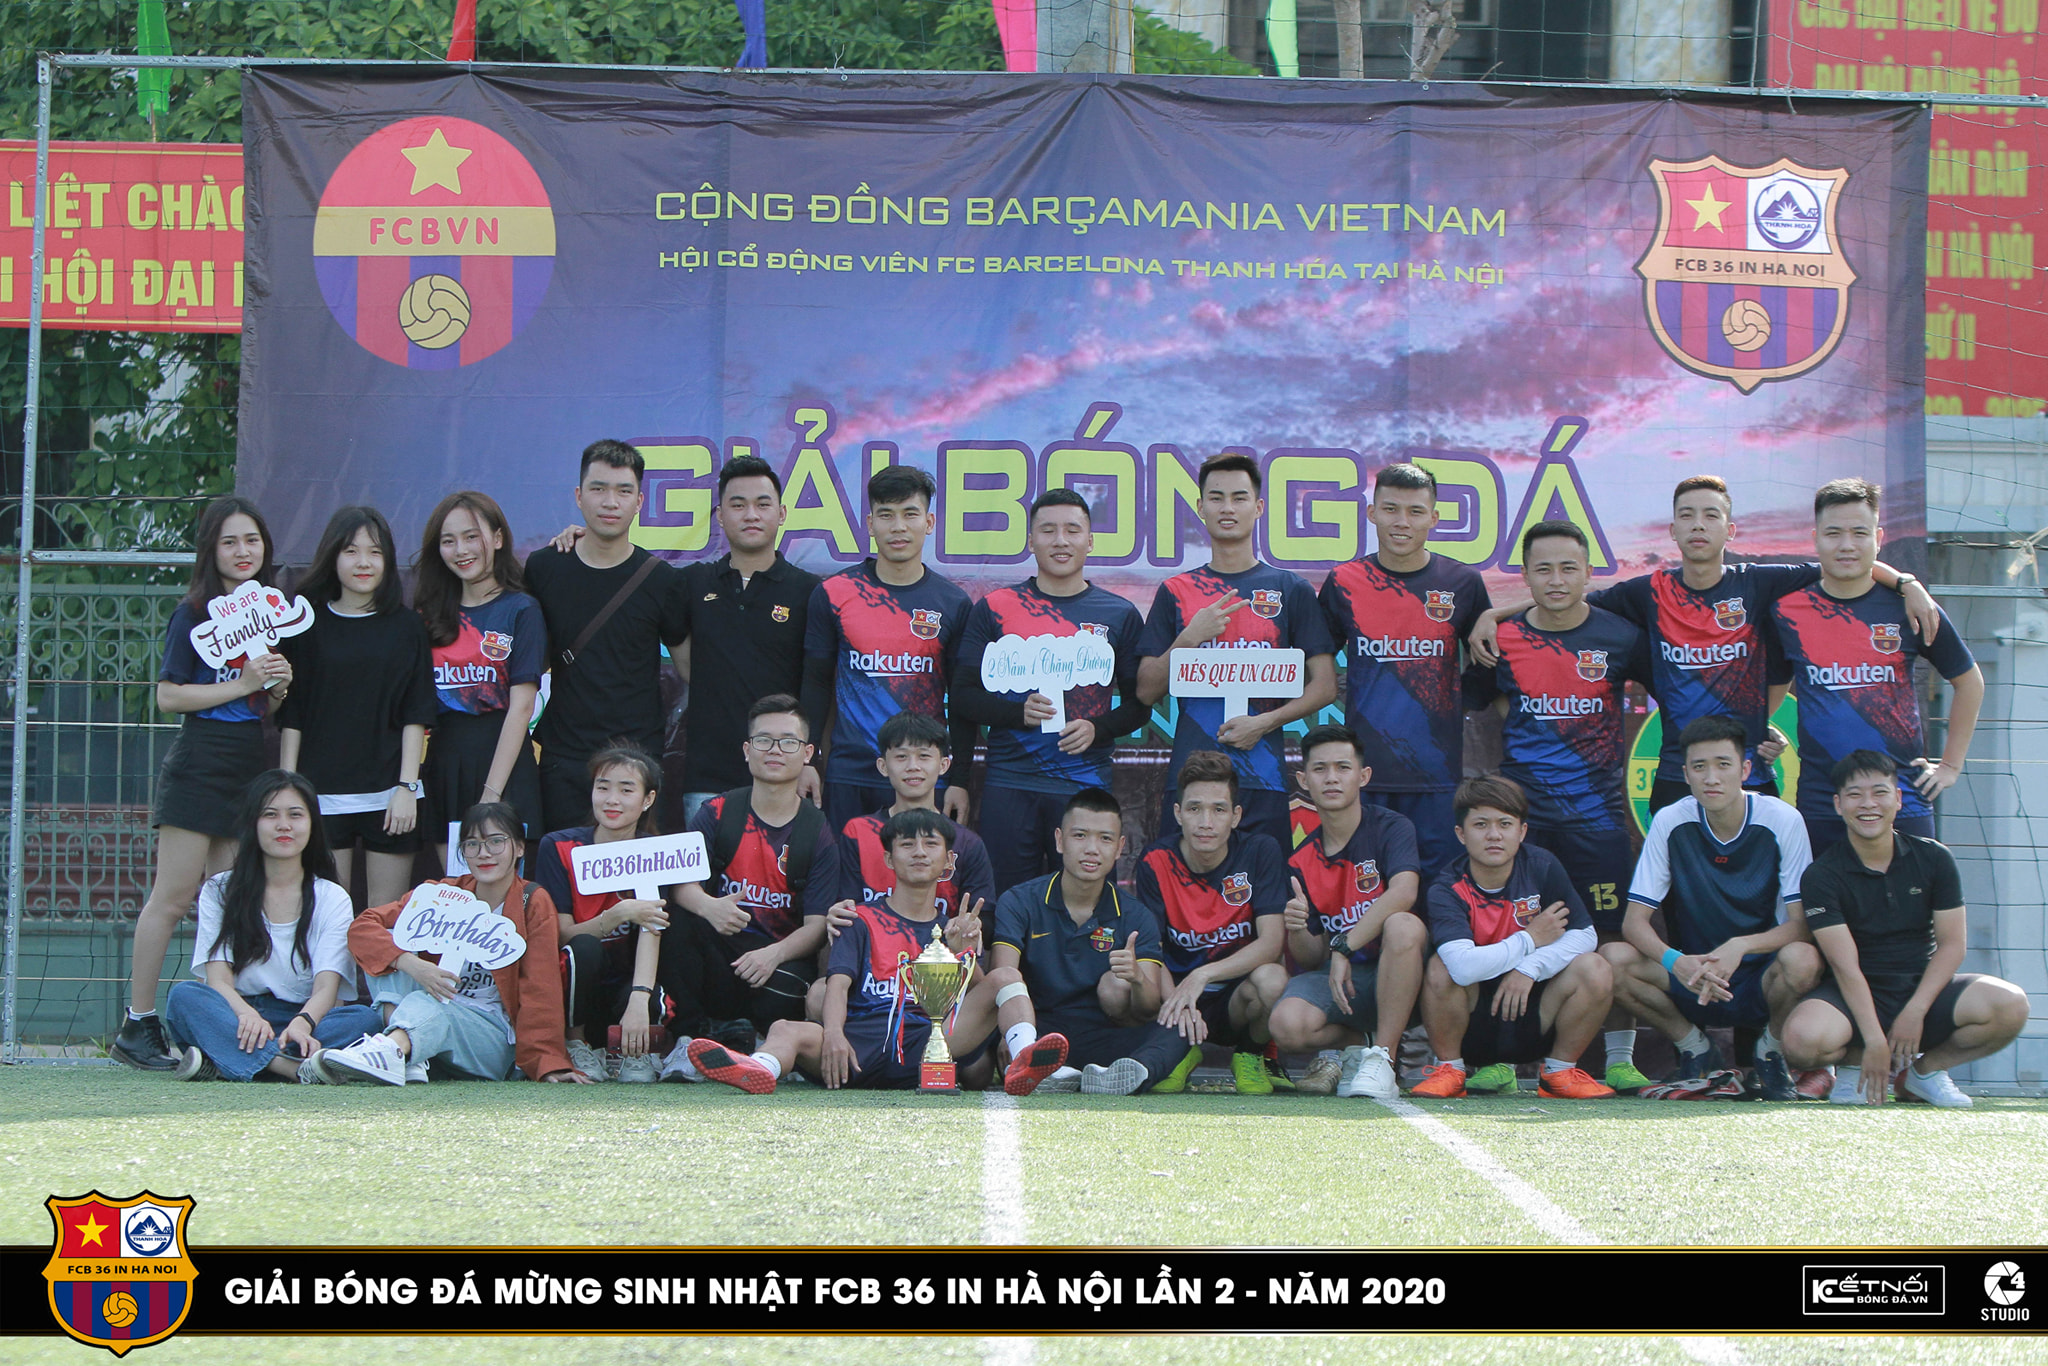 Khai mạc giải bóng đá tứ hùng mừng sinh nhật 2 tuổi FCB 36 in Hà Nội